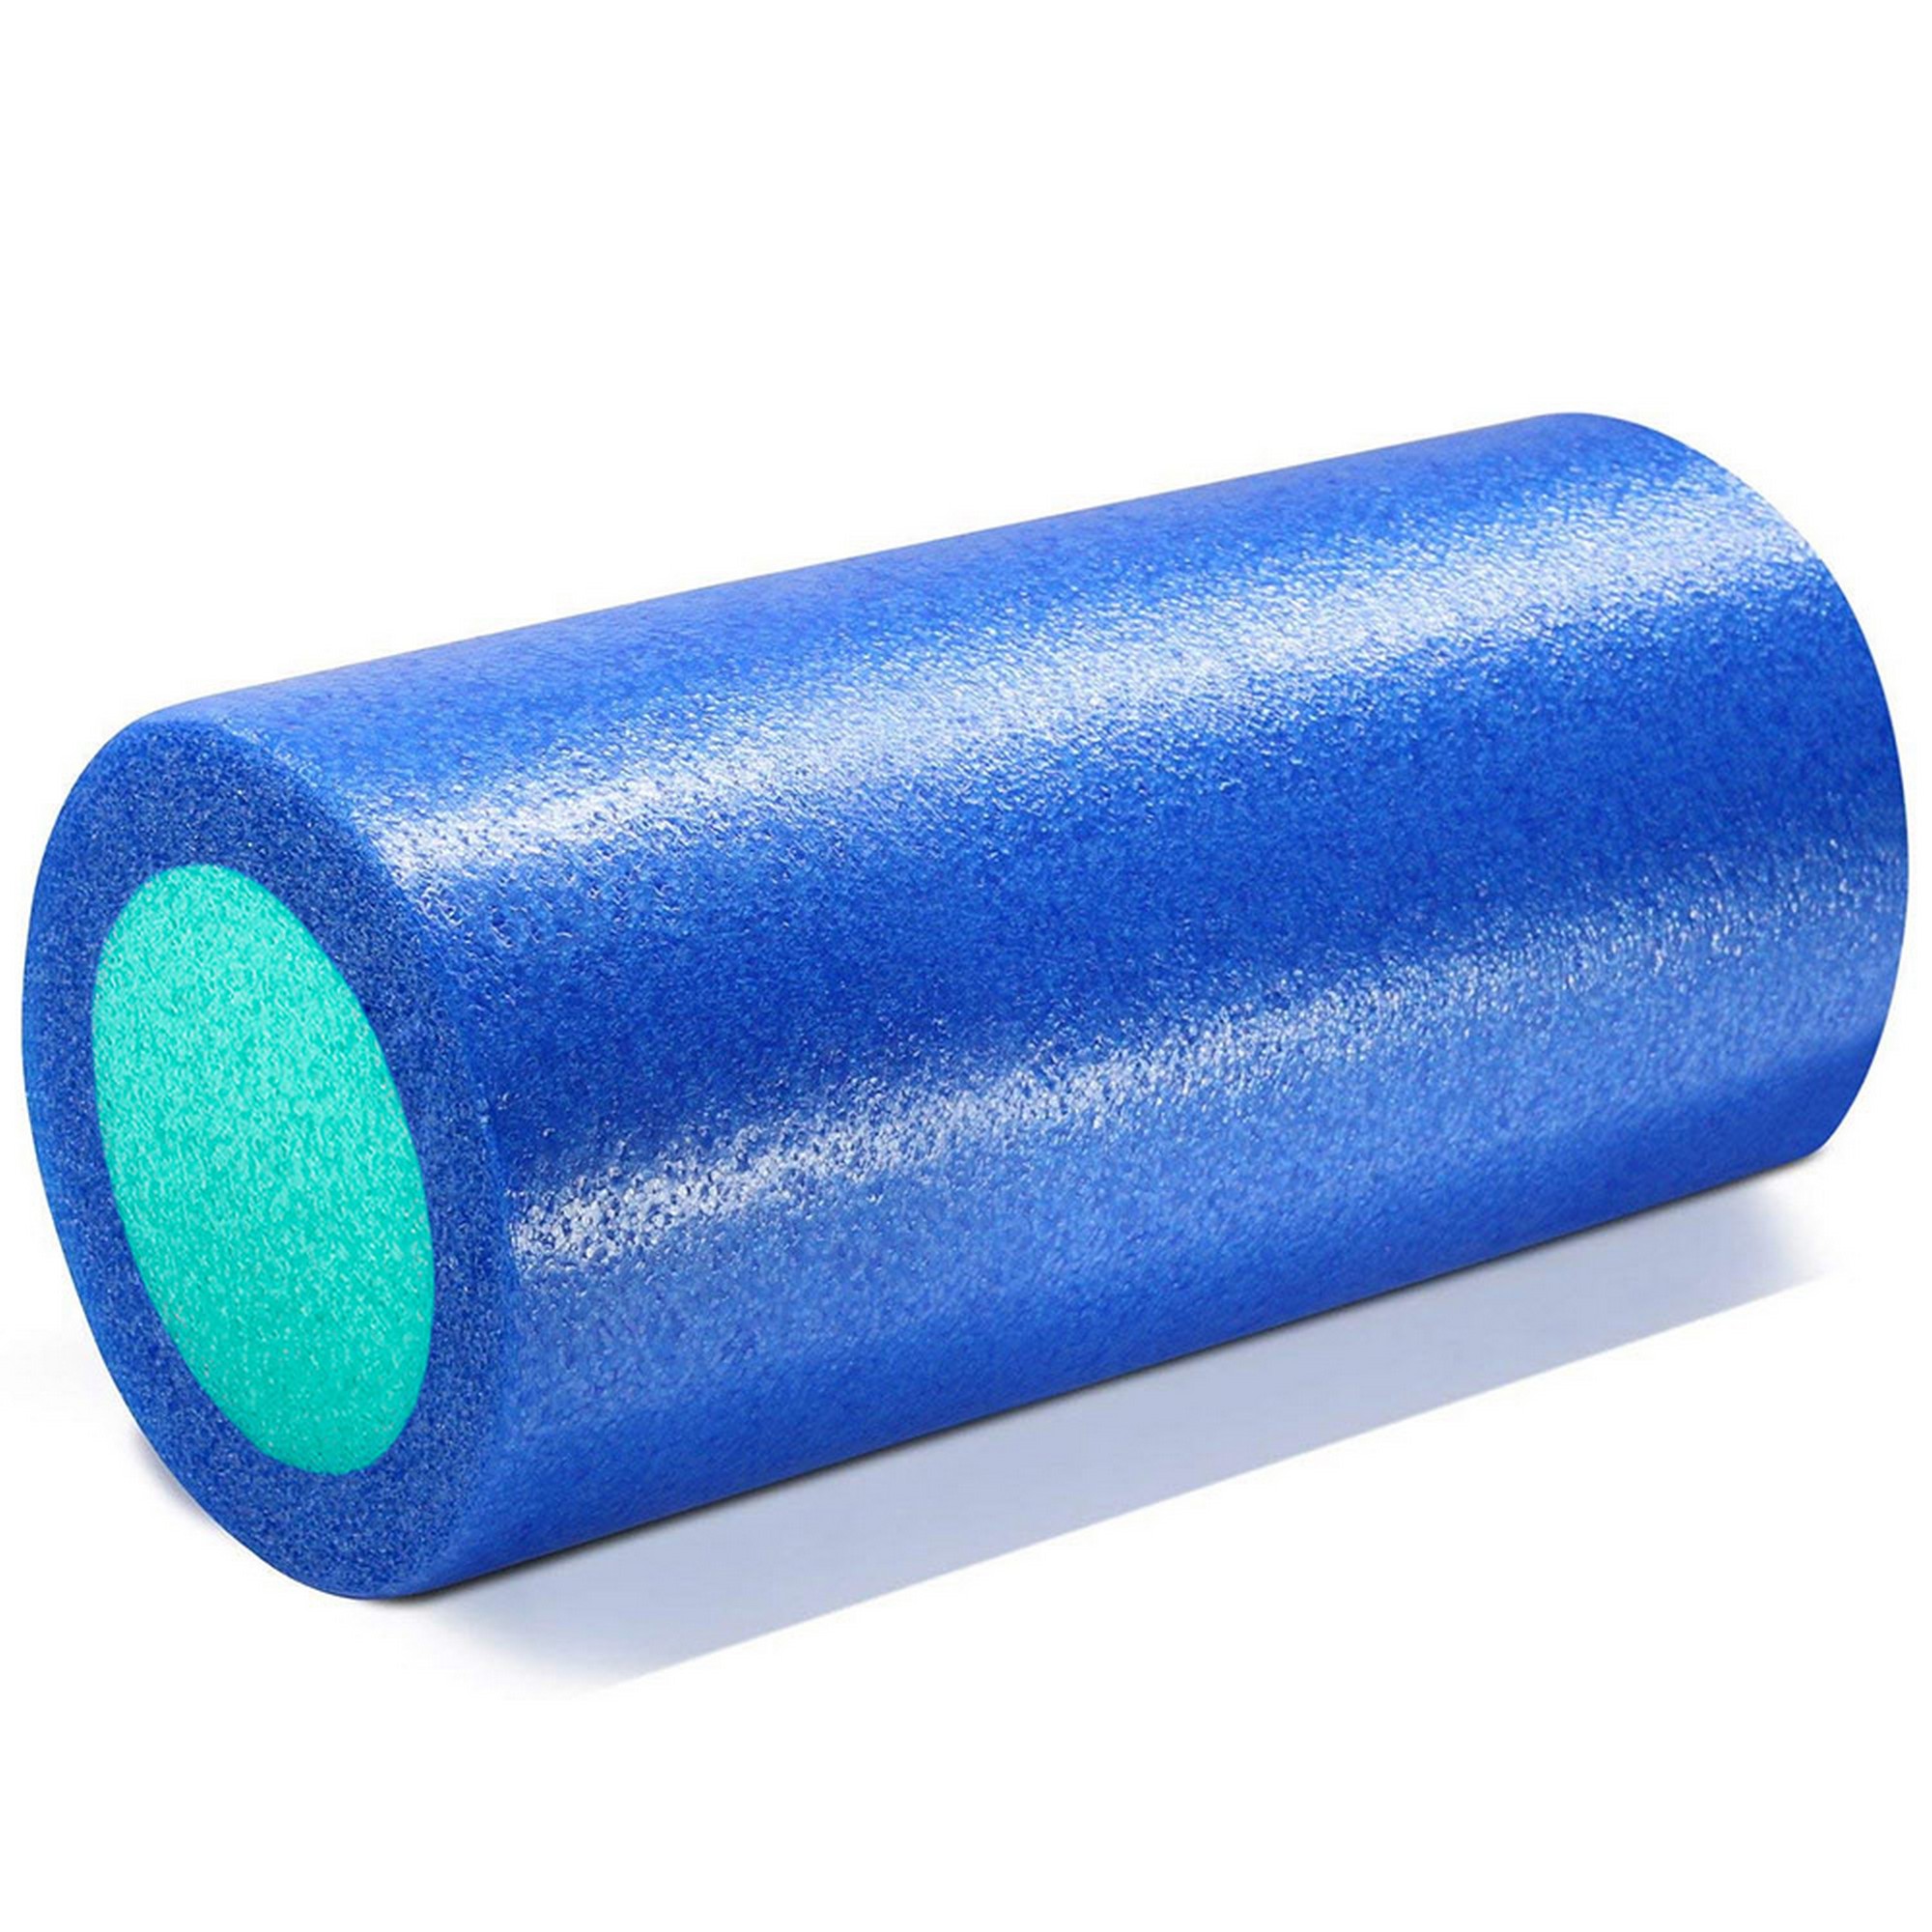 Ролик для йоги полнотелый 2-х цветный, 30х15см Sportex PEF30-B синий\зеленый 2000_2000